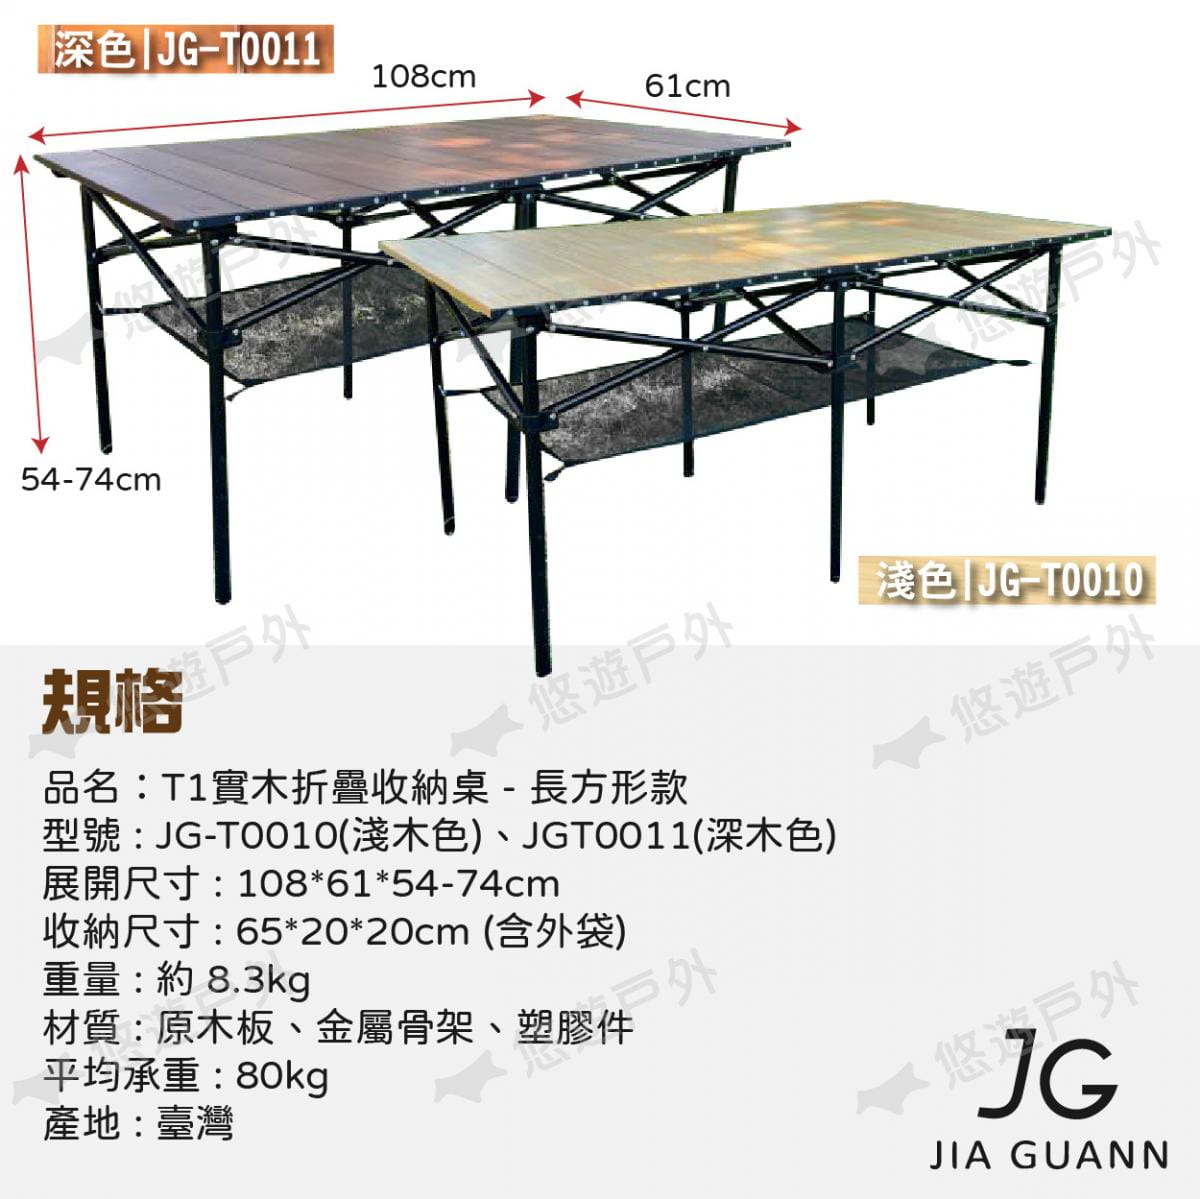 【JG Outdoor】T1實木折疊收納桌-長方形款 深色 JG-T0011 悠遊戶外 8